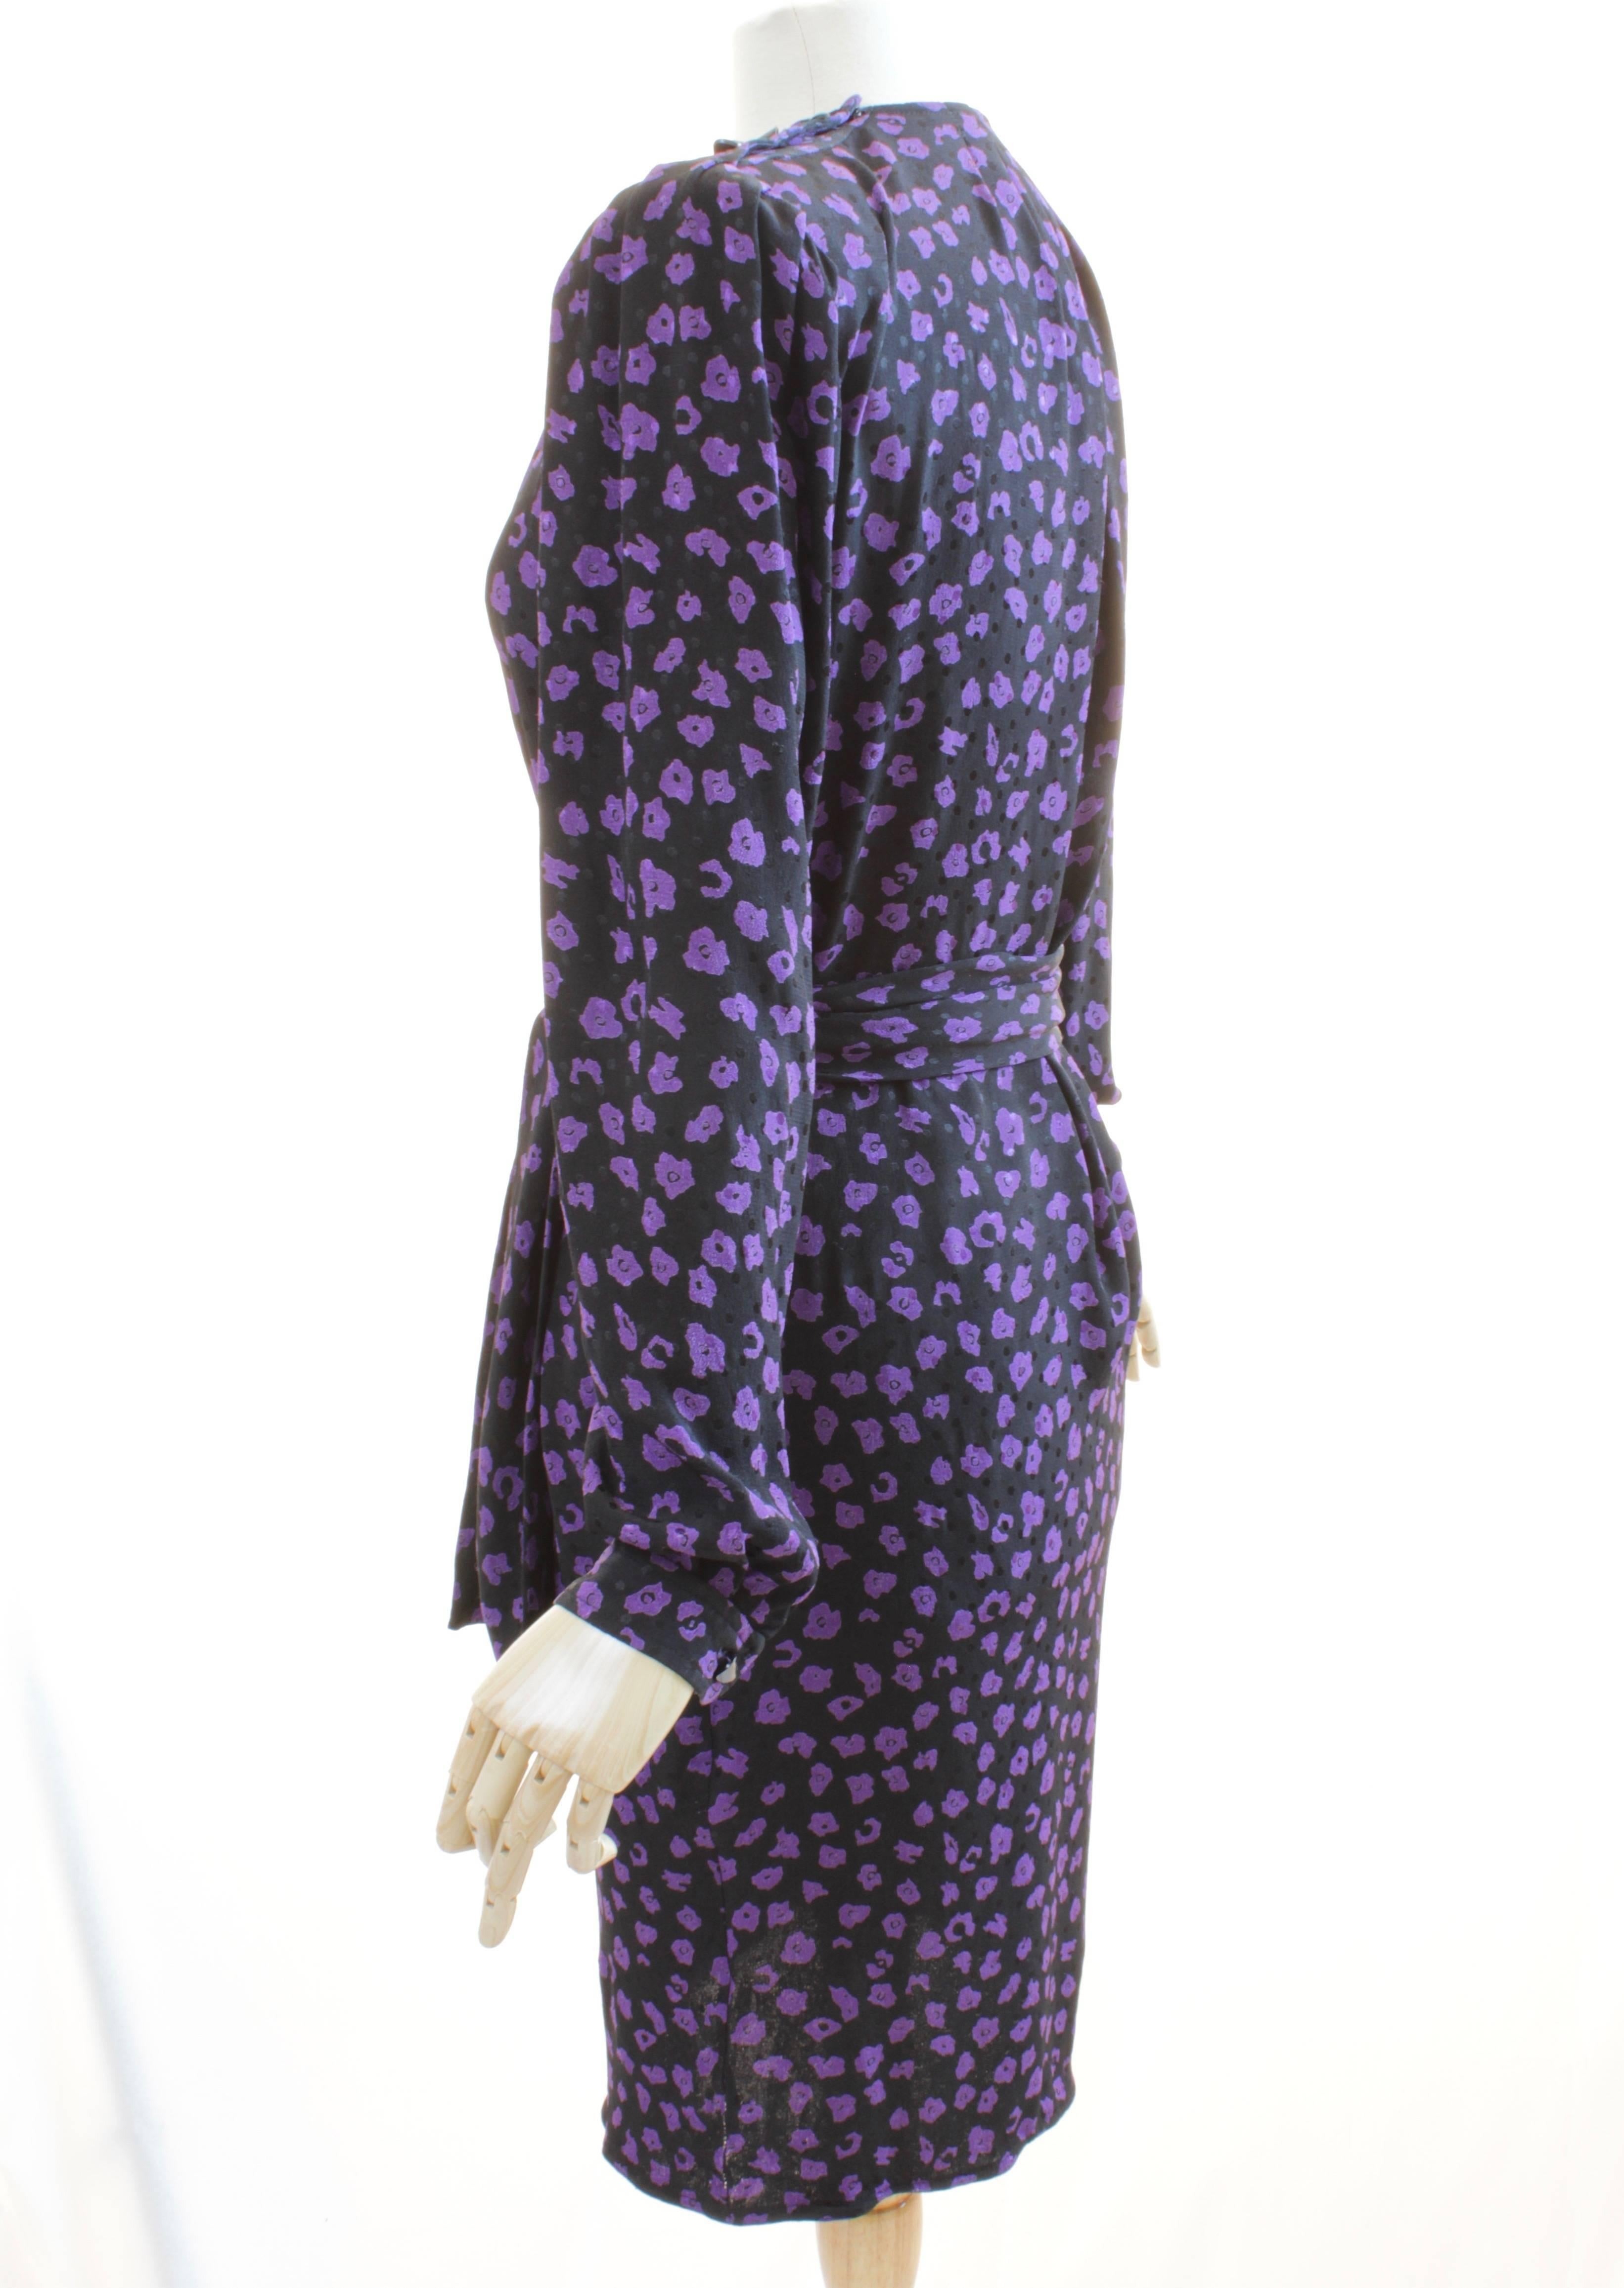 Vintage Ungaro Belted Dress Silk Jacquard Purple Floral on Black Size 10 2